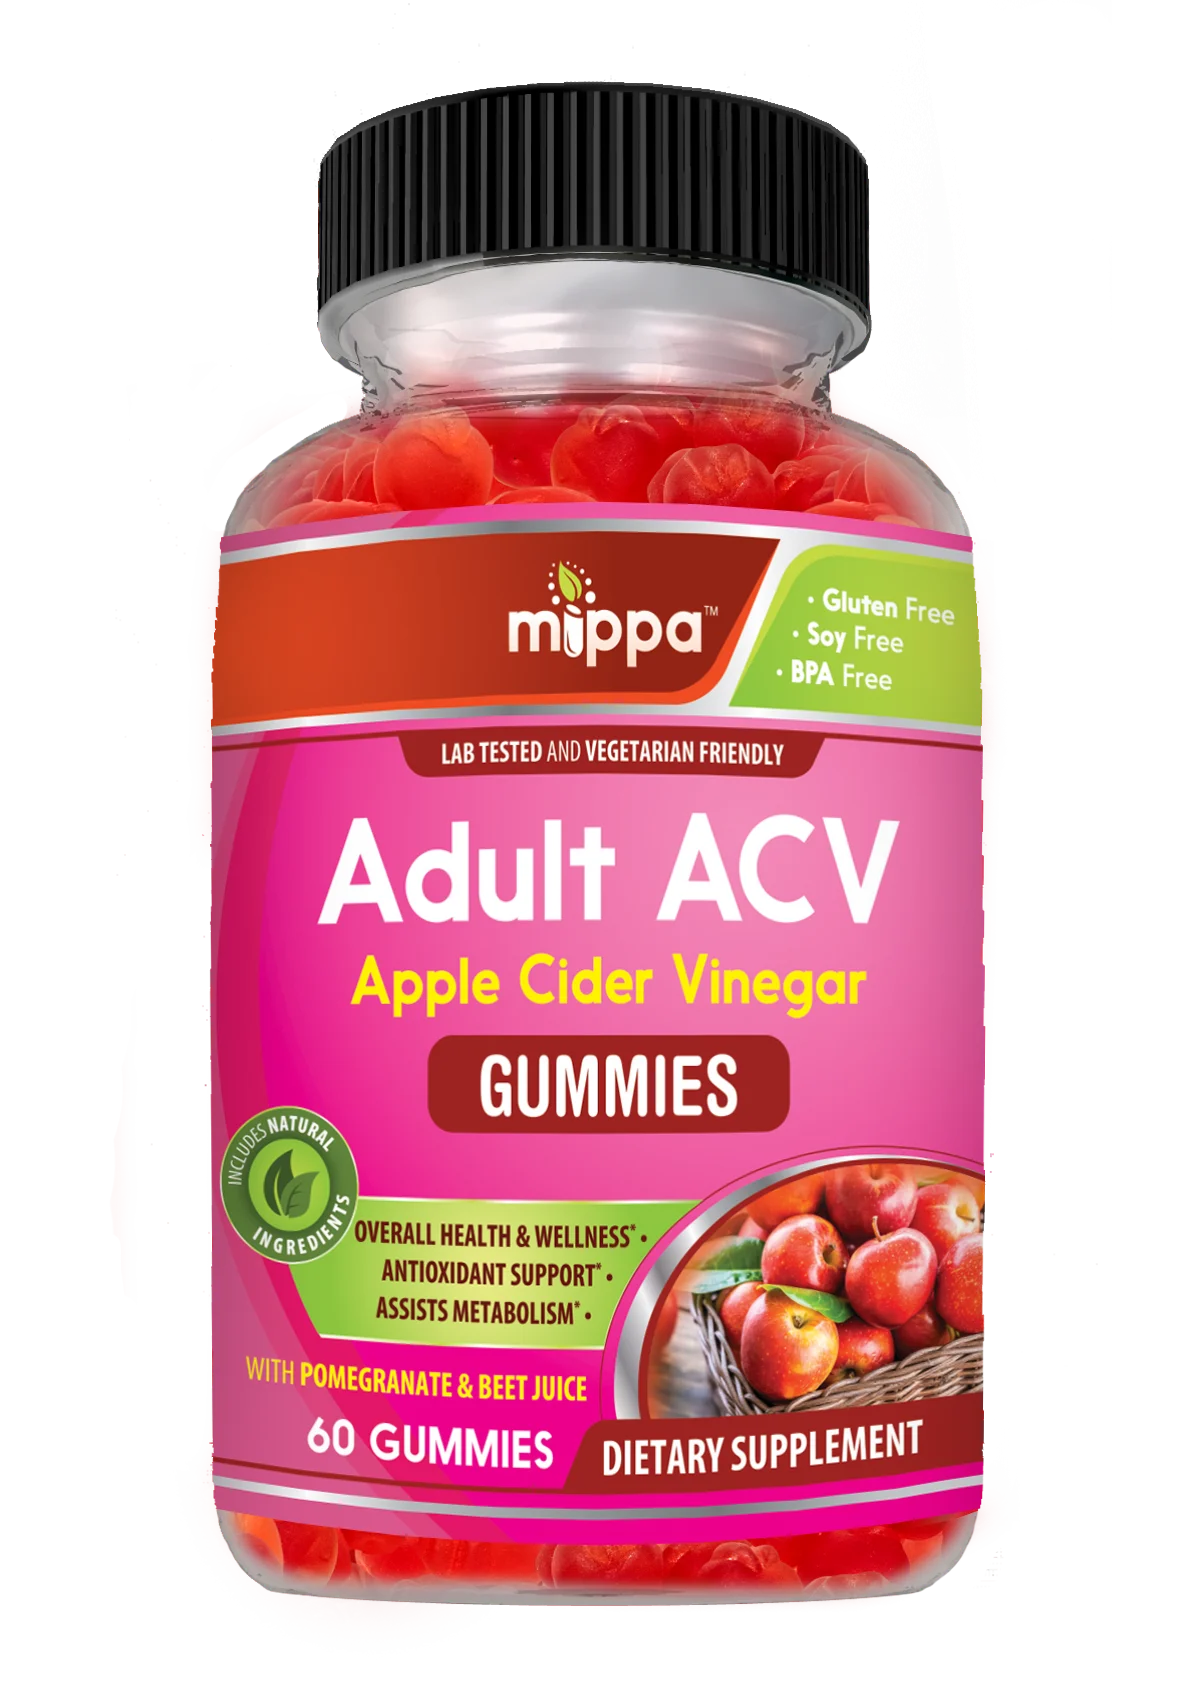 Adult ACV Gummies